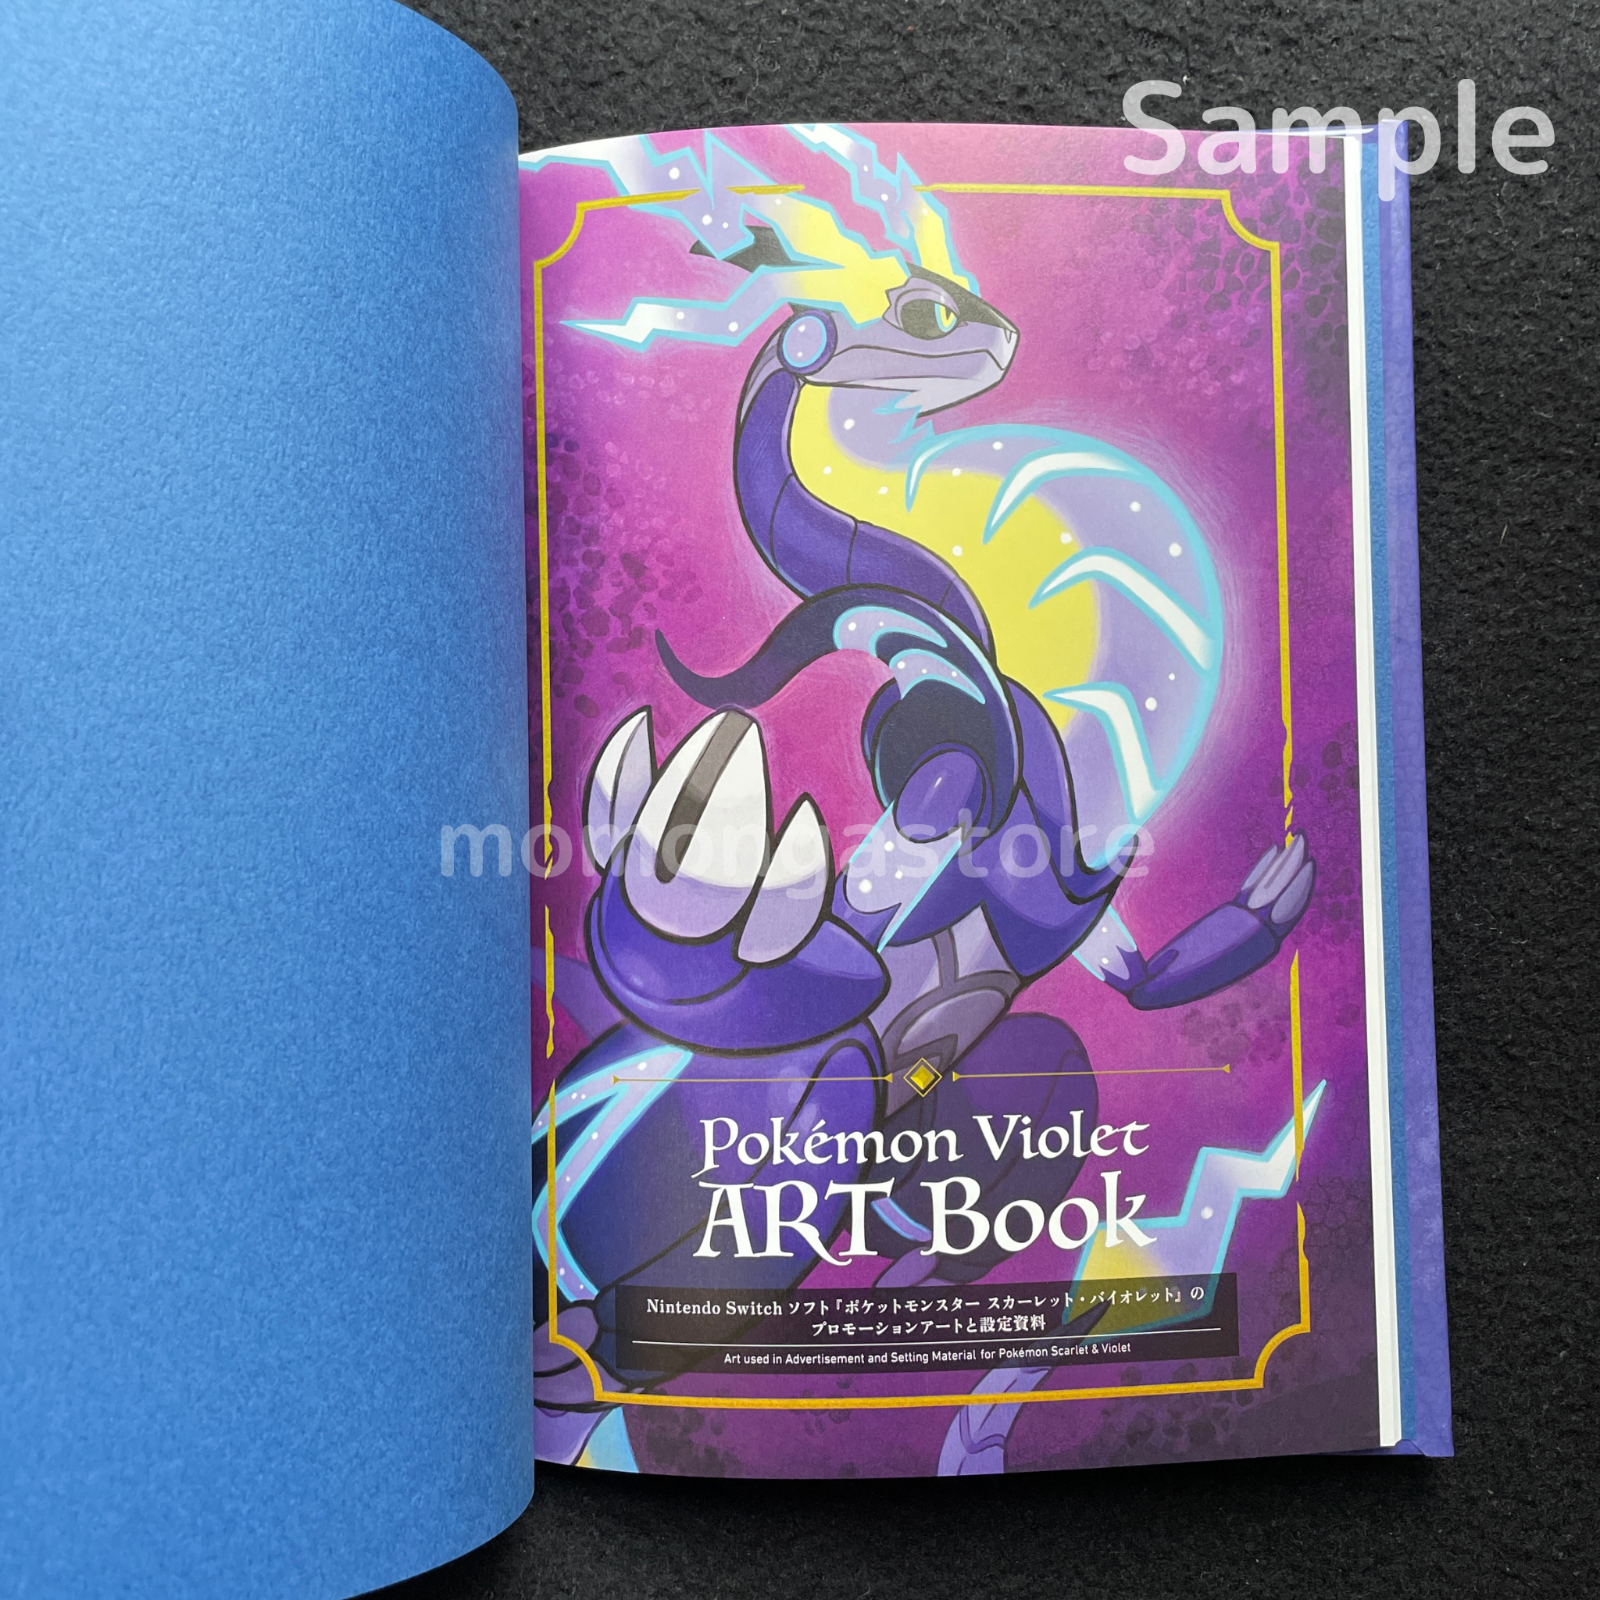 Sealed Pokemon Scarlet & Violet Art books + Pokemon Center Limited Card Set Pokémon Center Does not apply - фотография #16